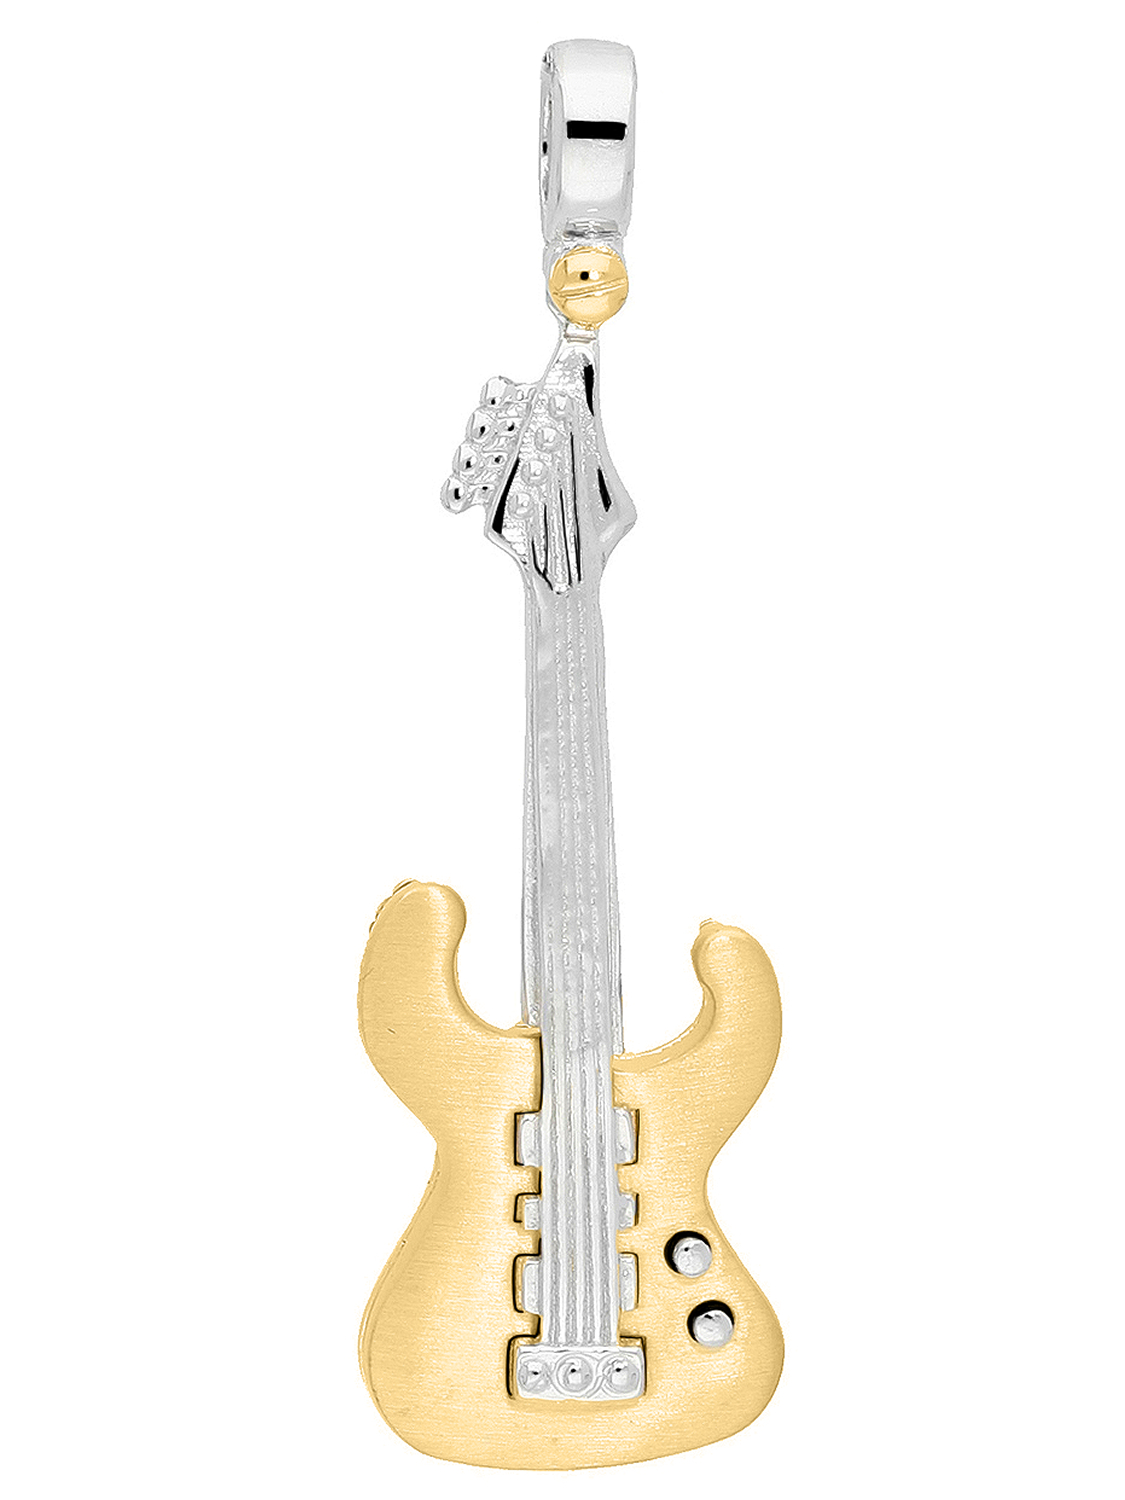 Motivanhänger Gitarre in Weiß- und Gelbgold 